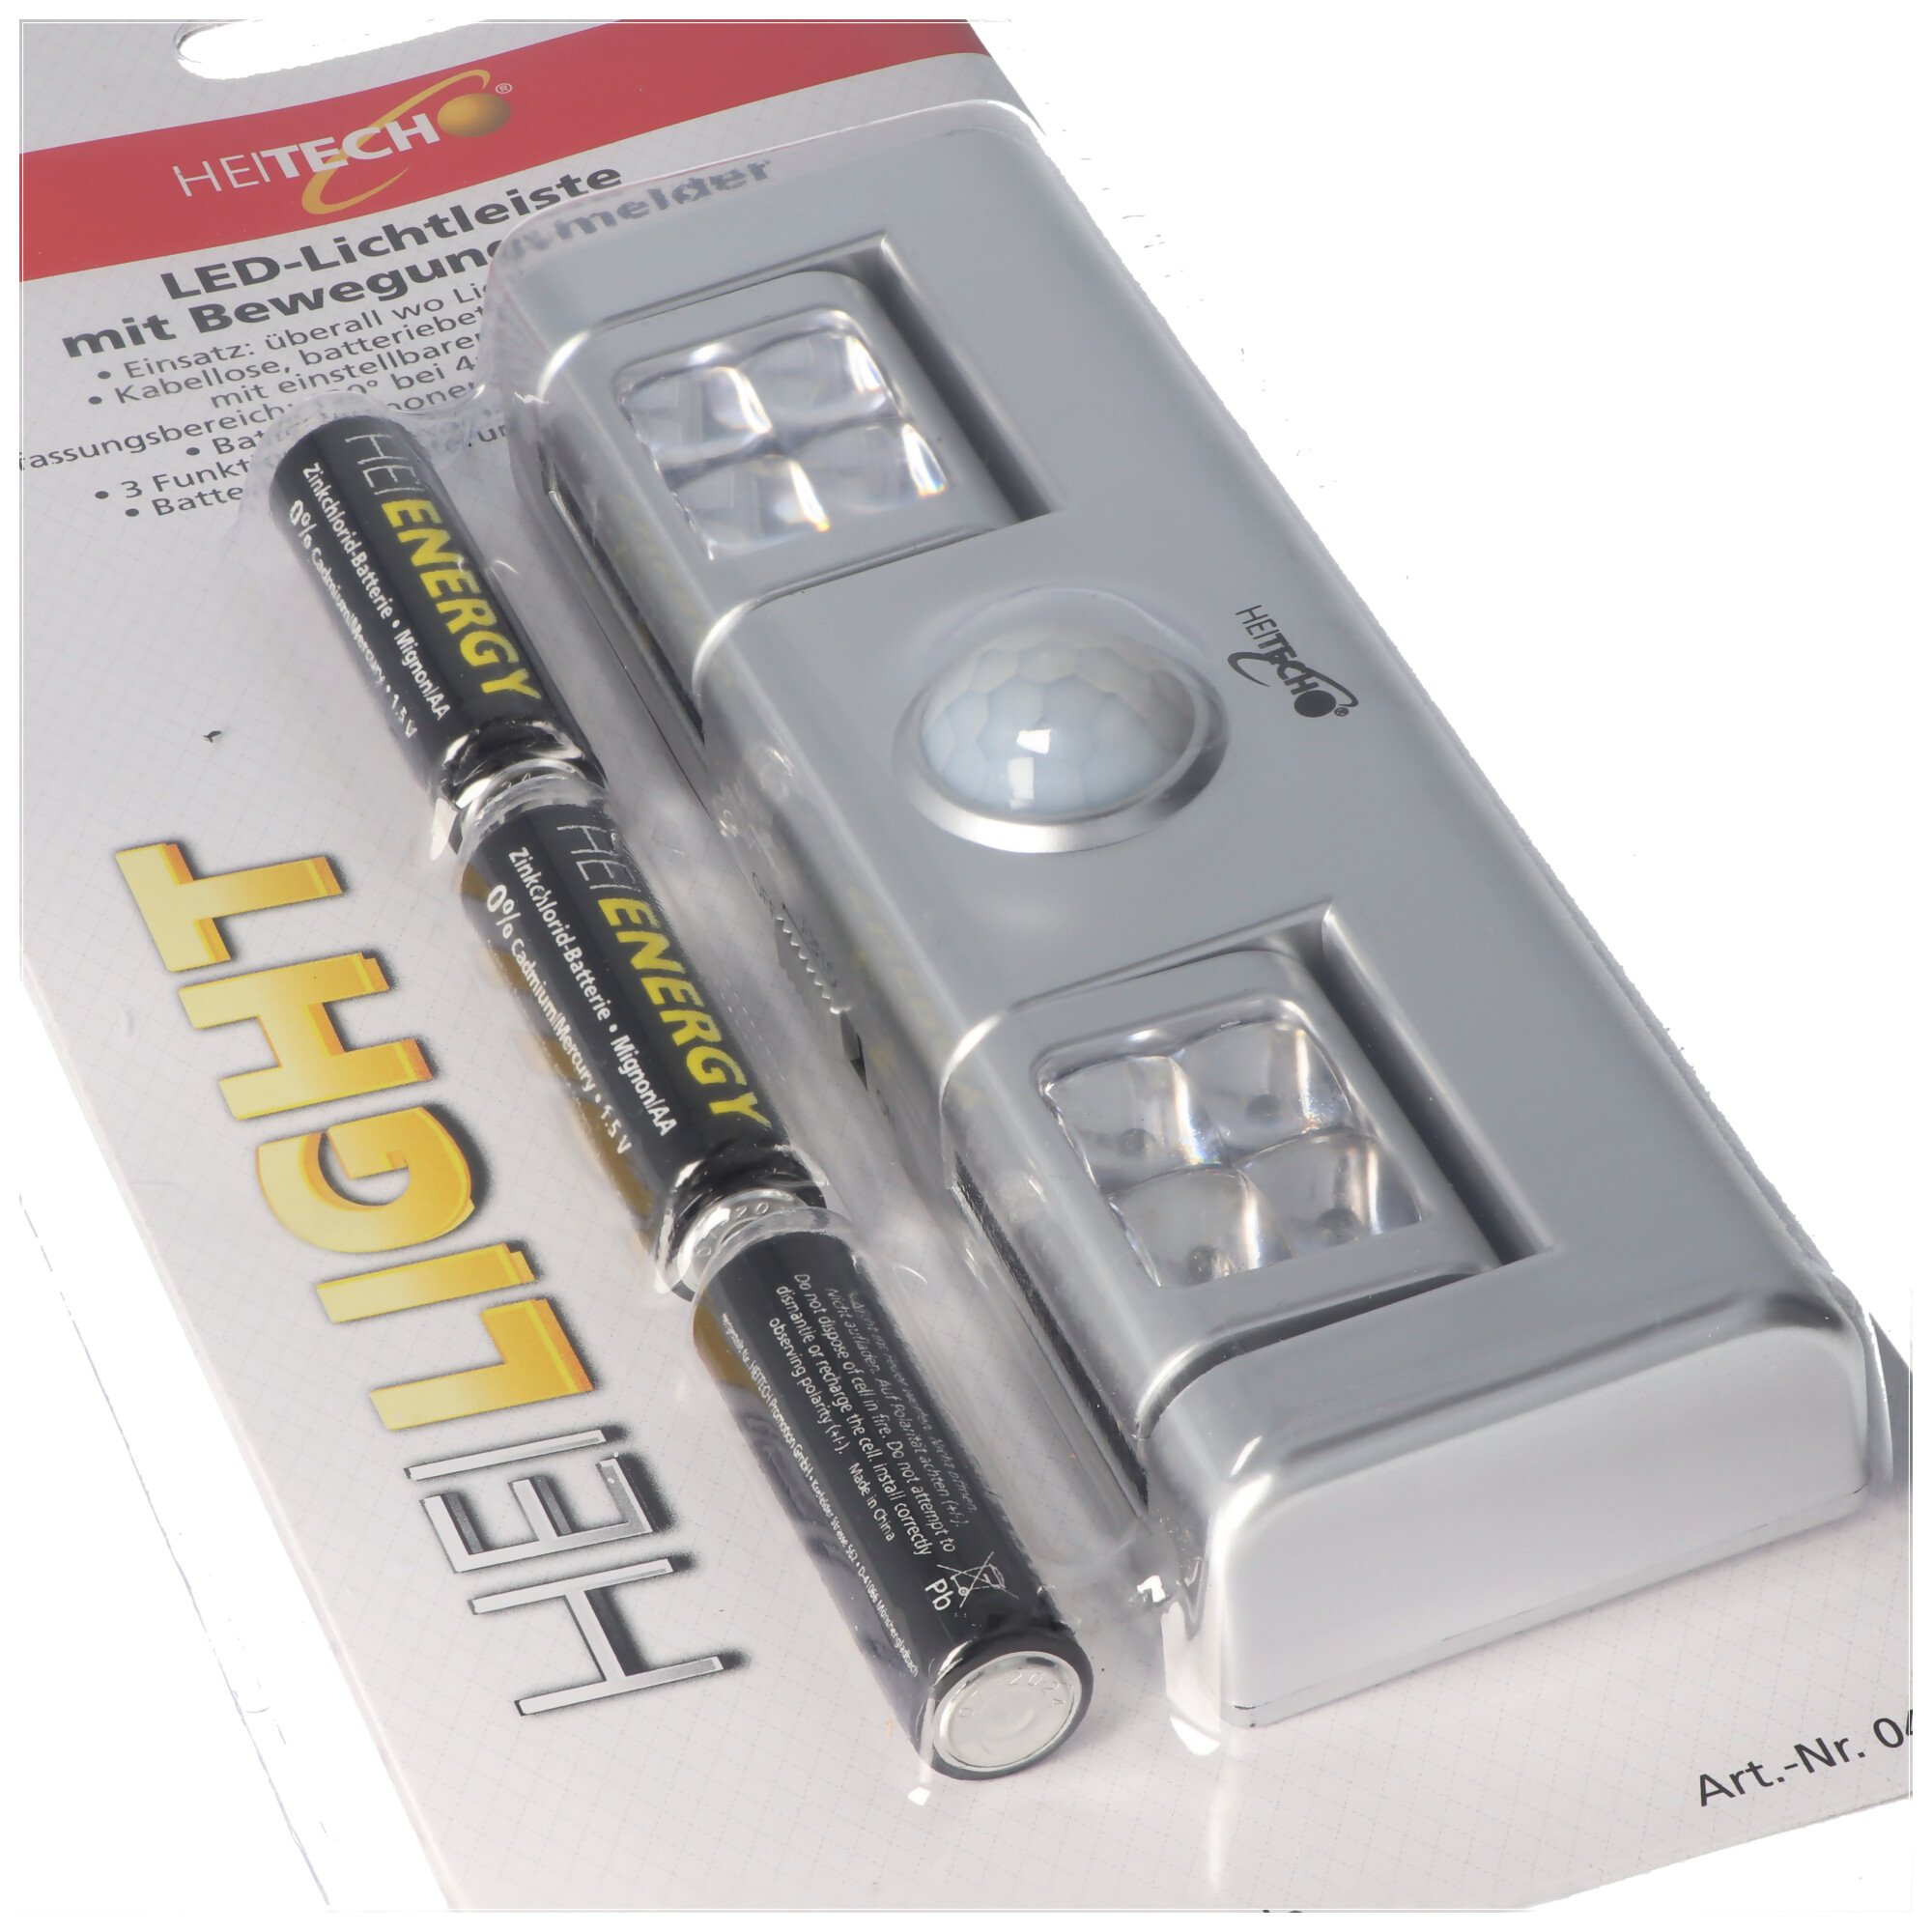 LED-Lichtleiste mit Bewegungsmelder, batteriebetriebene Lichtleiste,  kabellos, inklusive 3x Mignon AA Batterien | Sonstige Lampen |  LEDs,Taschenlampen, Lichttechnik | Akkushop